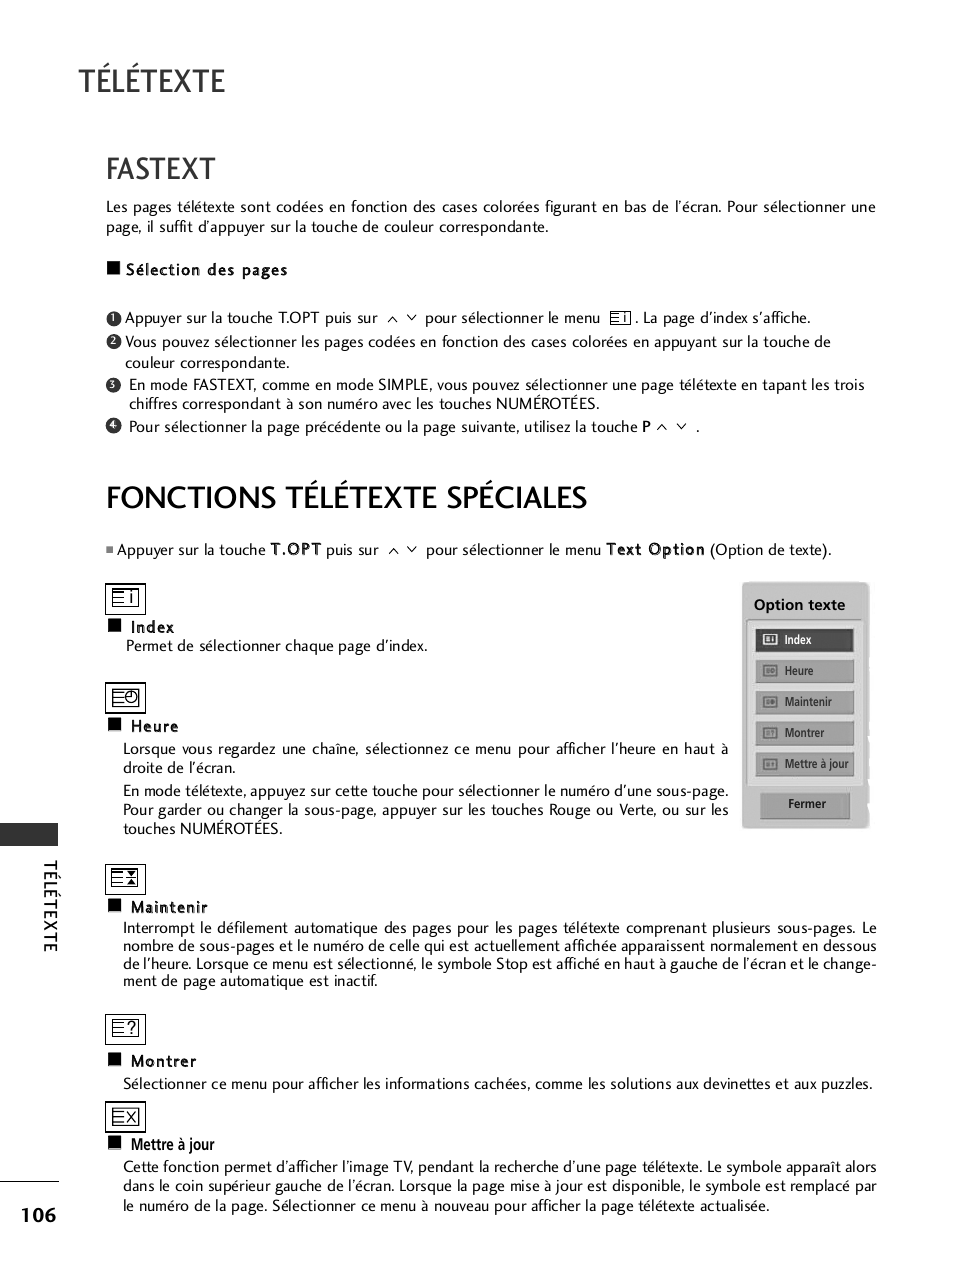 Fastext, Fonctions télétexte spéciales, Télétexte | LG 50PQ1000 Manuel d'utilisation | Page 108 / 124